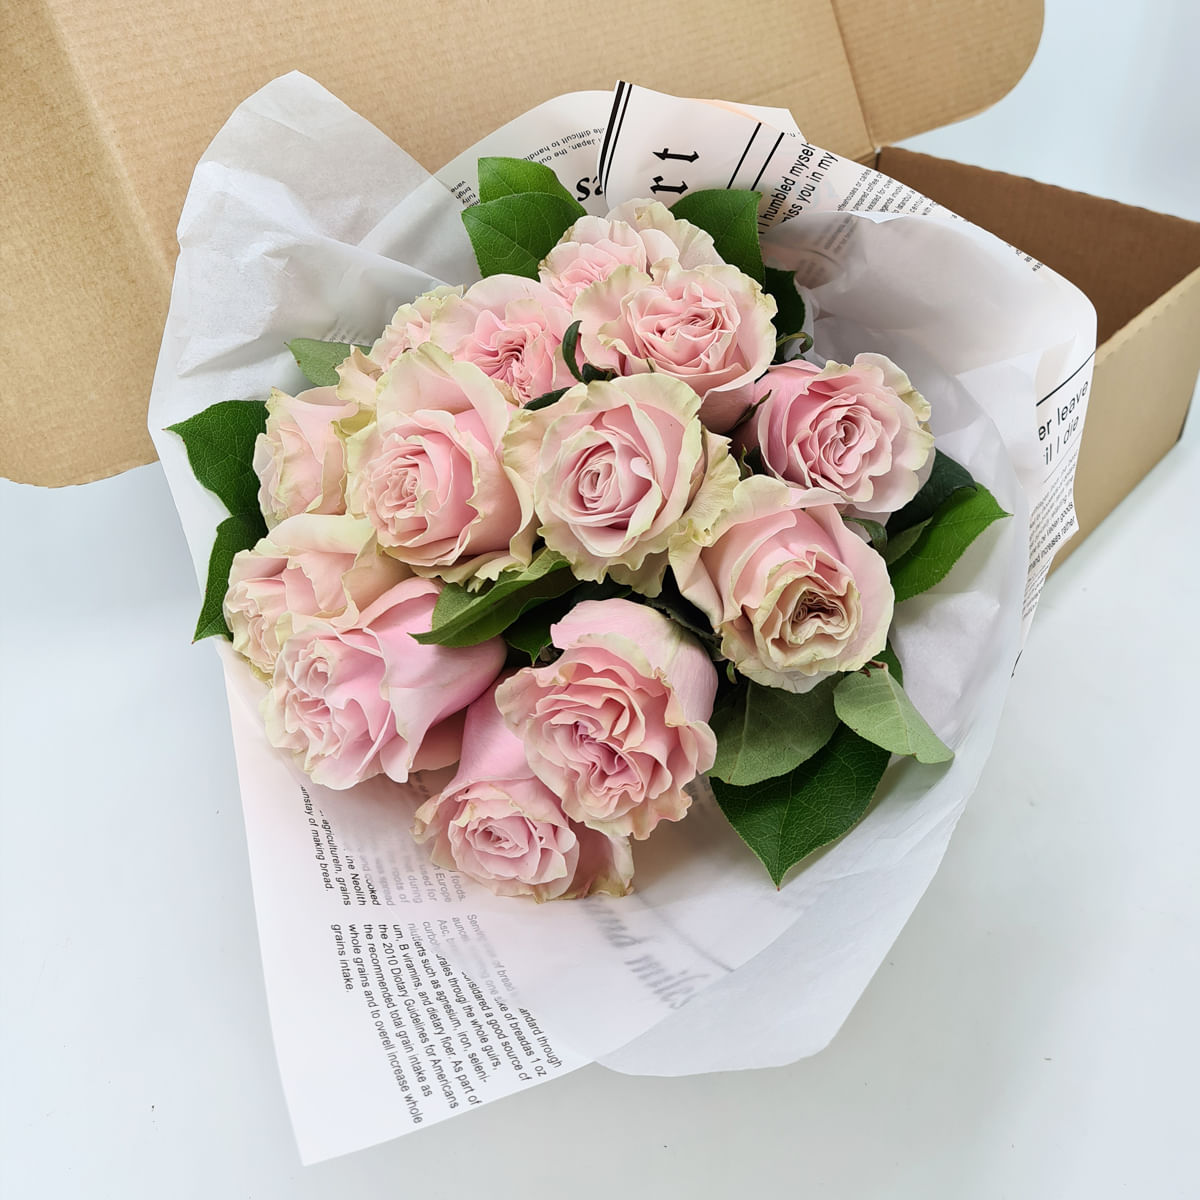 Buchet de 13 trandafiri roz in cutie Buchet imagine 2022